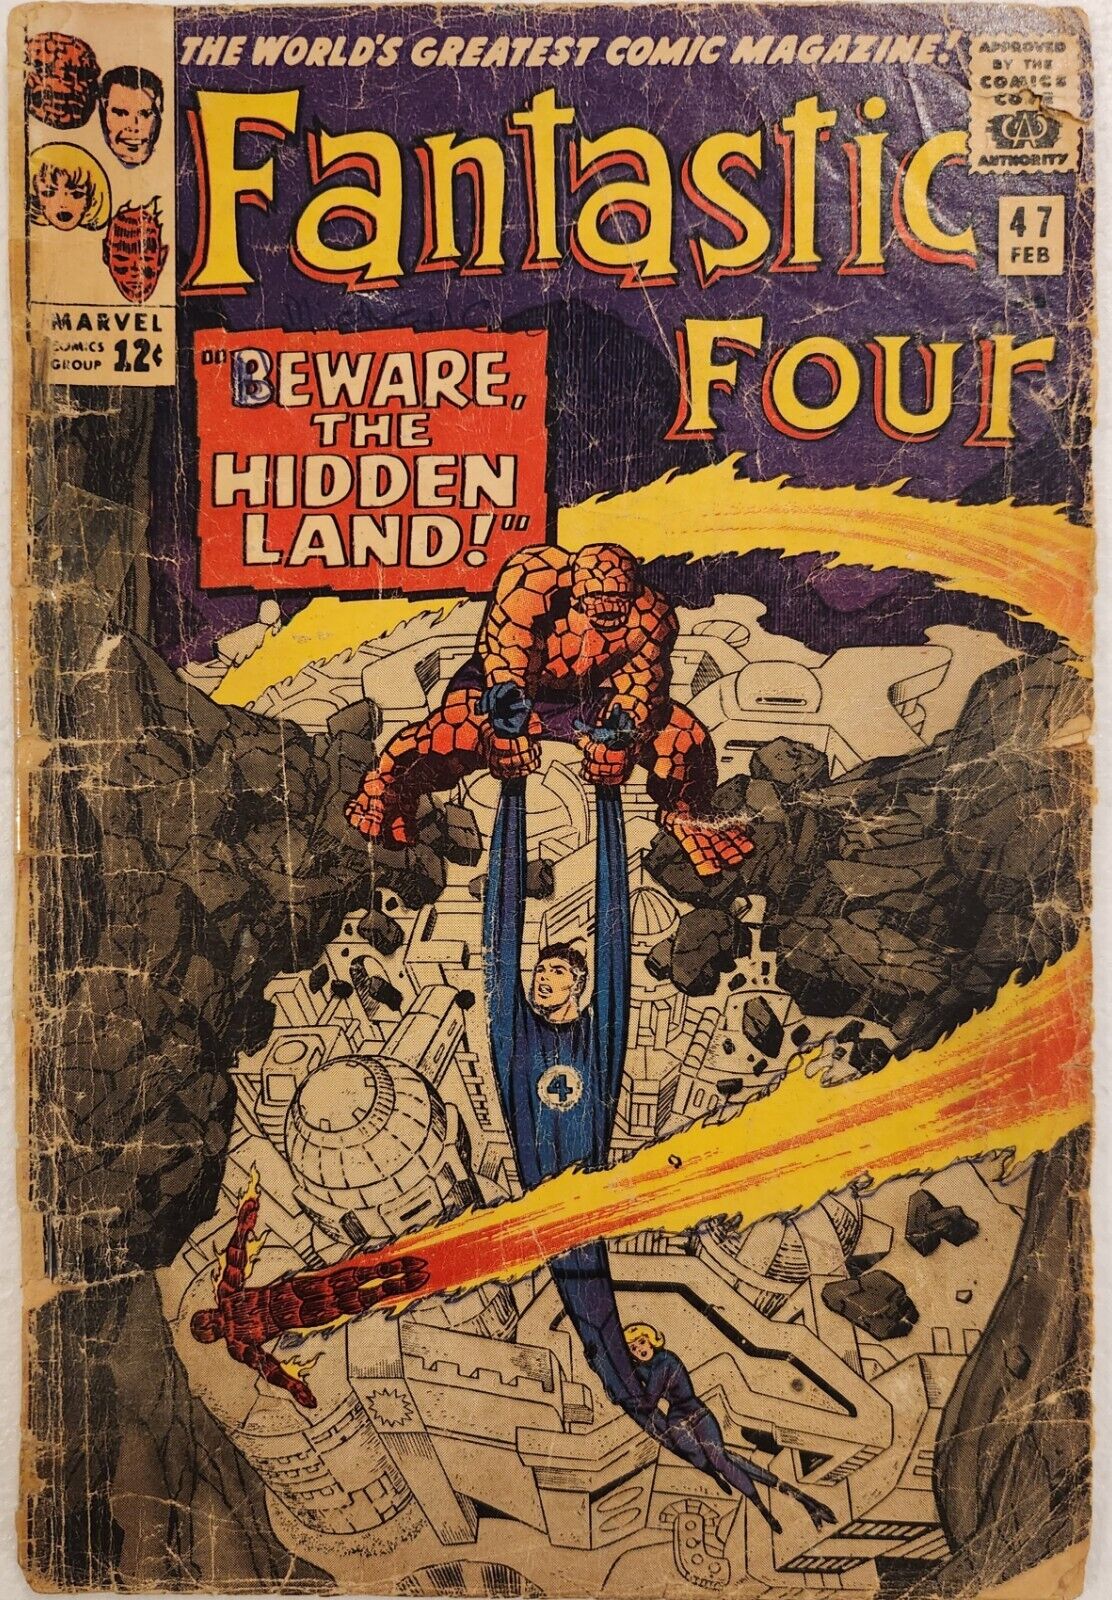 Fantastic Four Volume 1 - # 47